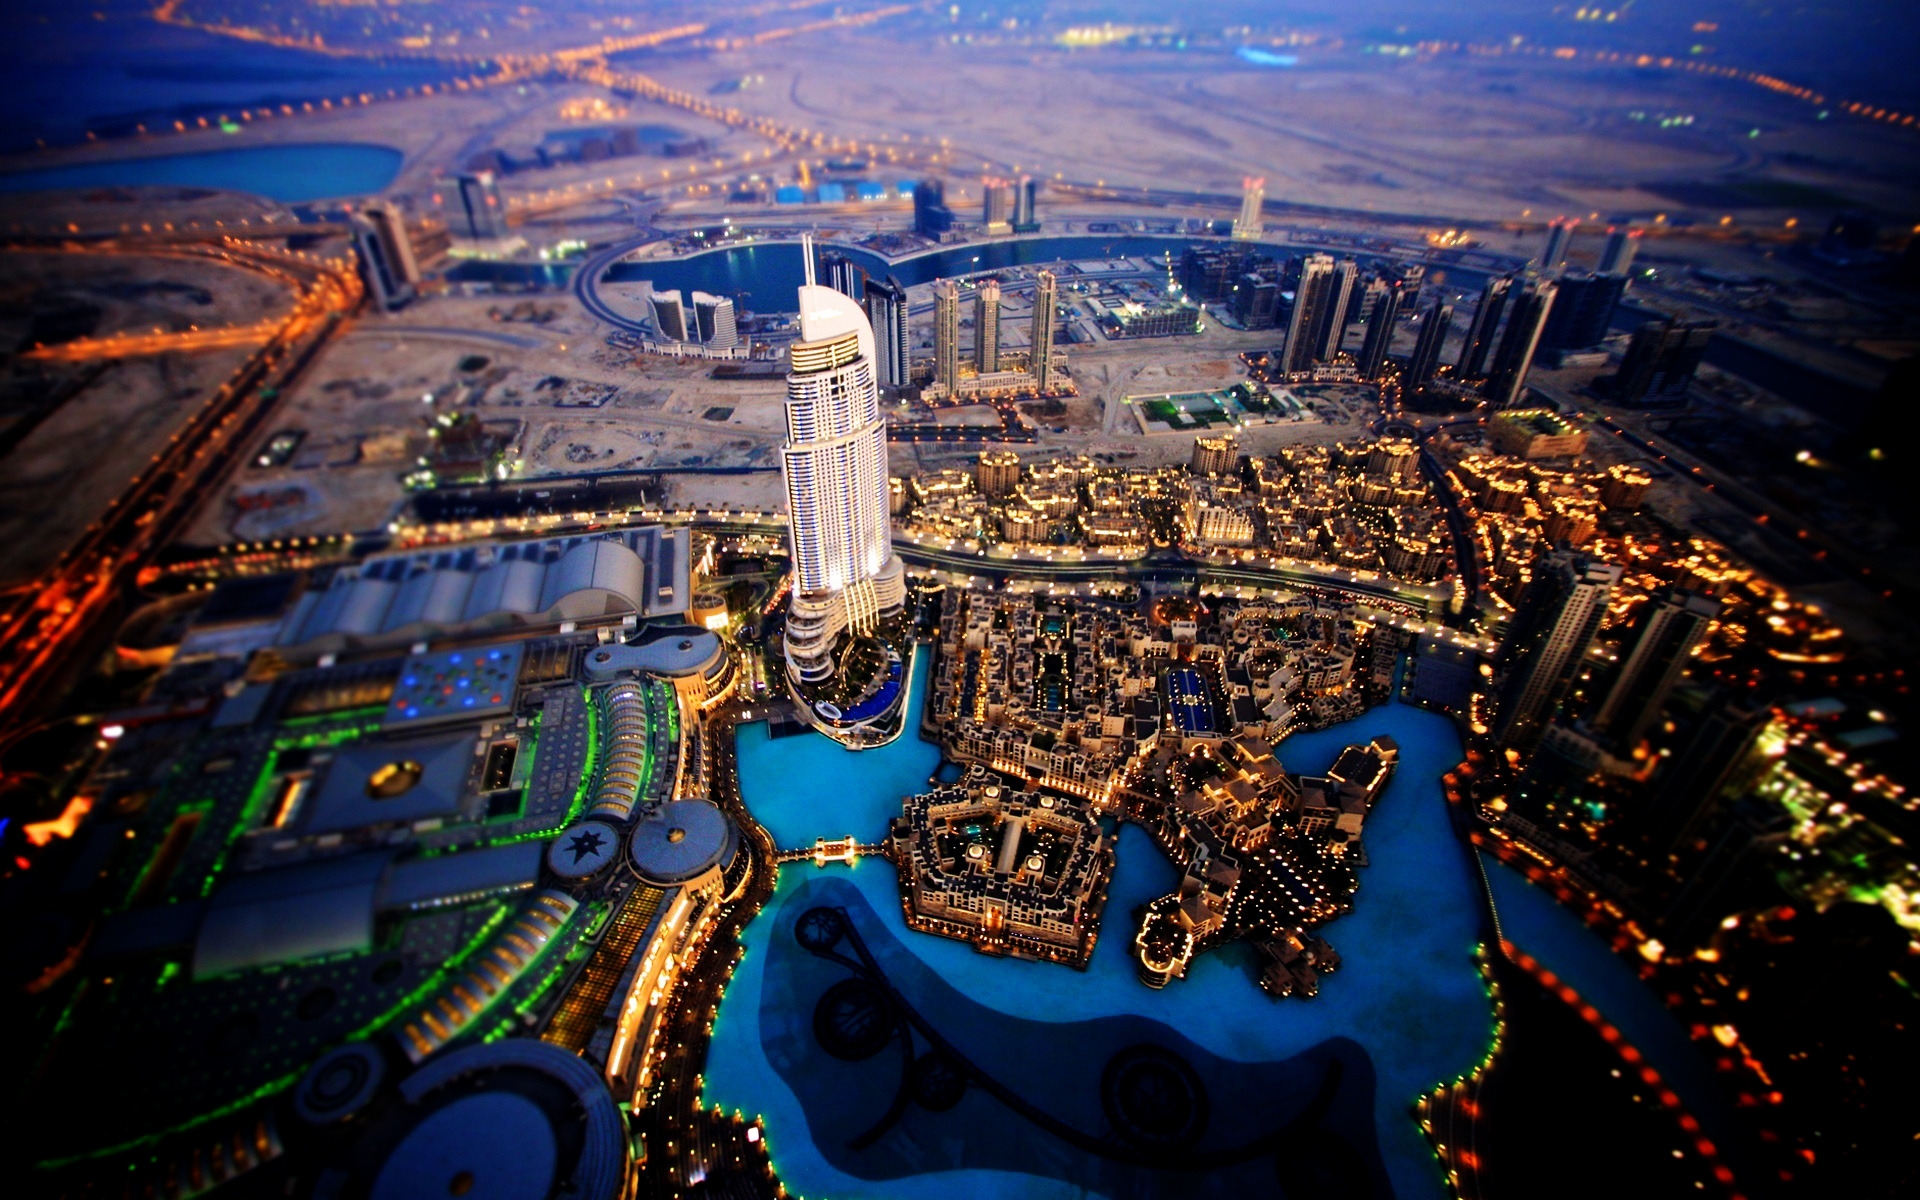 Dubai Sky View for 1920 x 1200 widescreen resolution